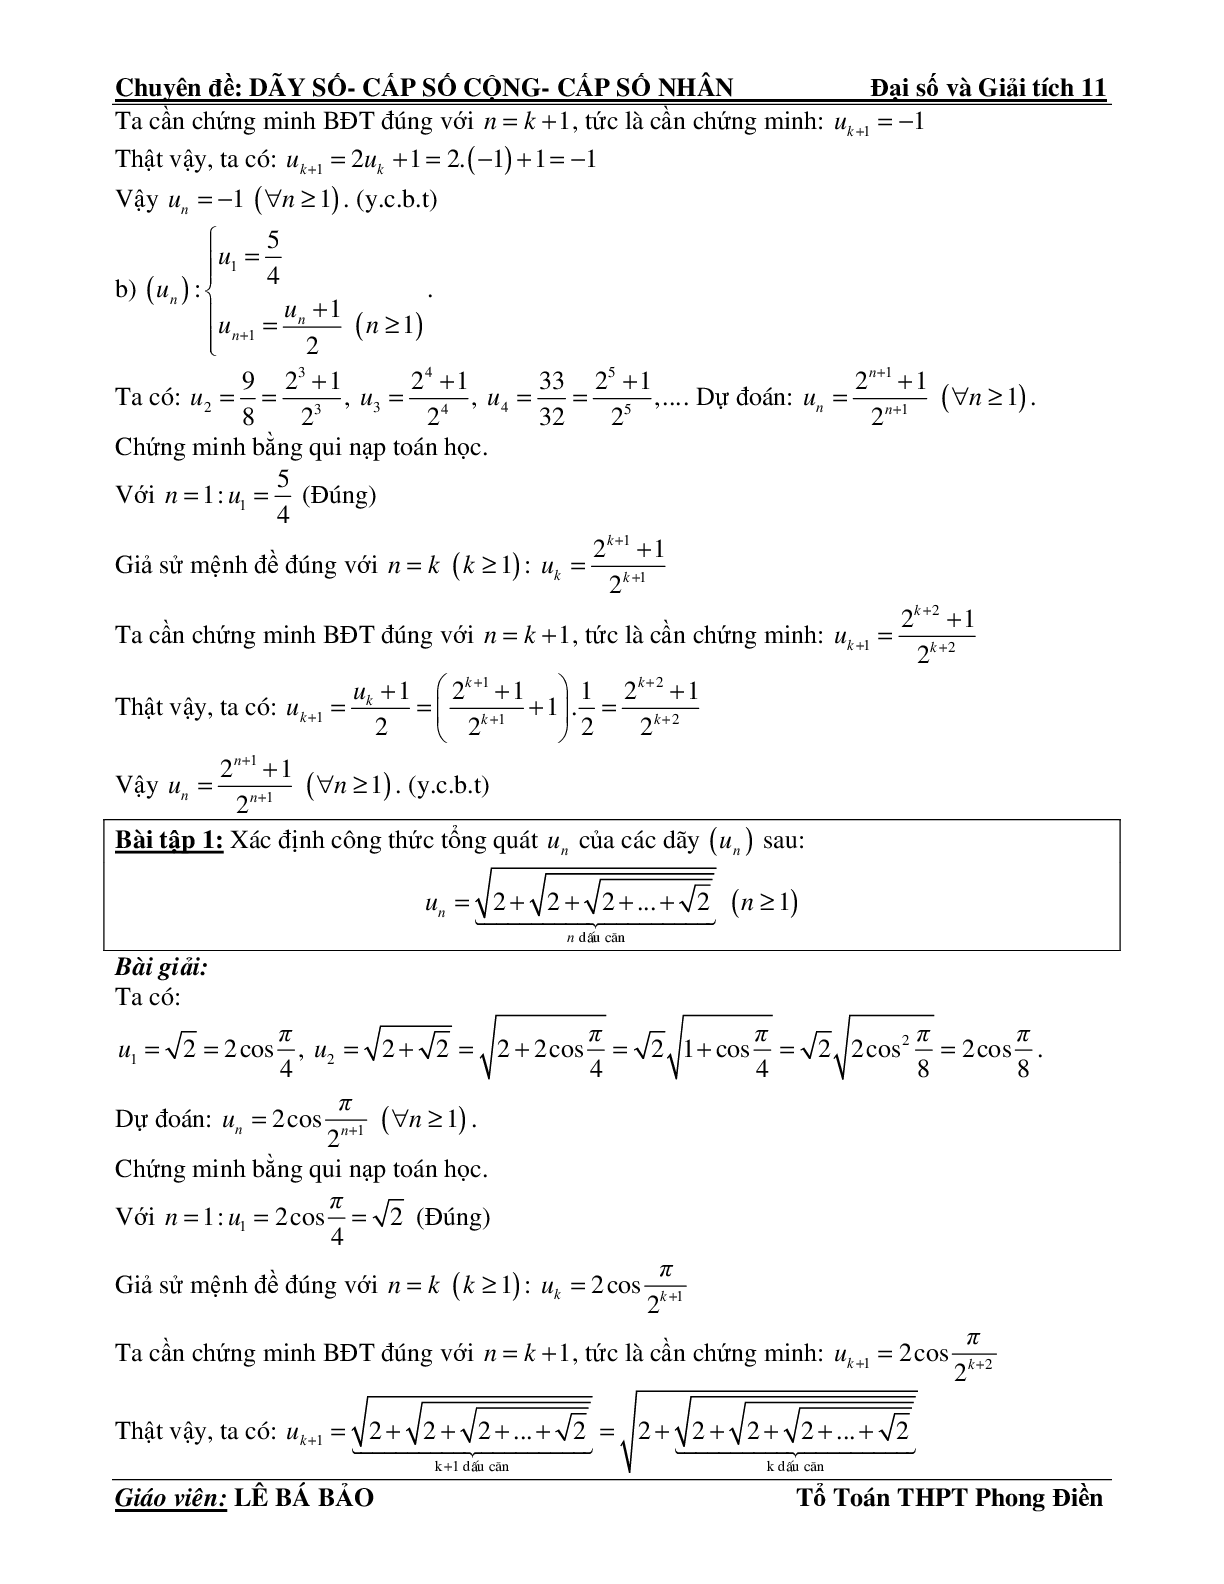 Bài tập phương pháp quy nạp toán học (trang 7)